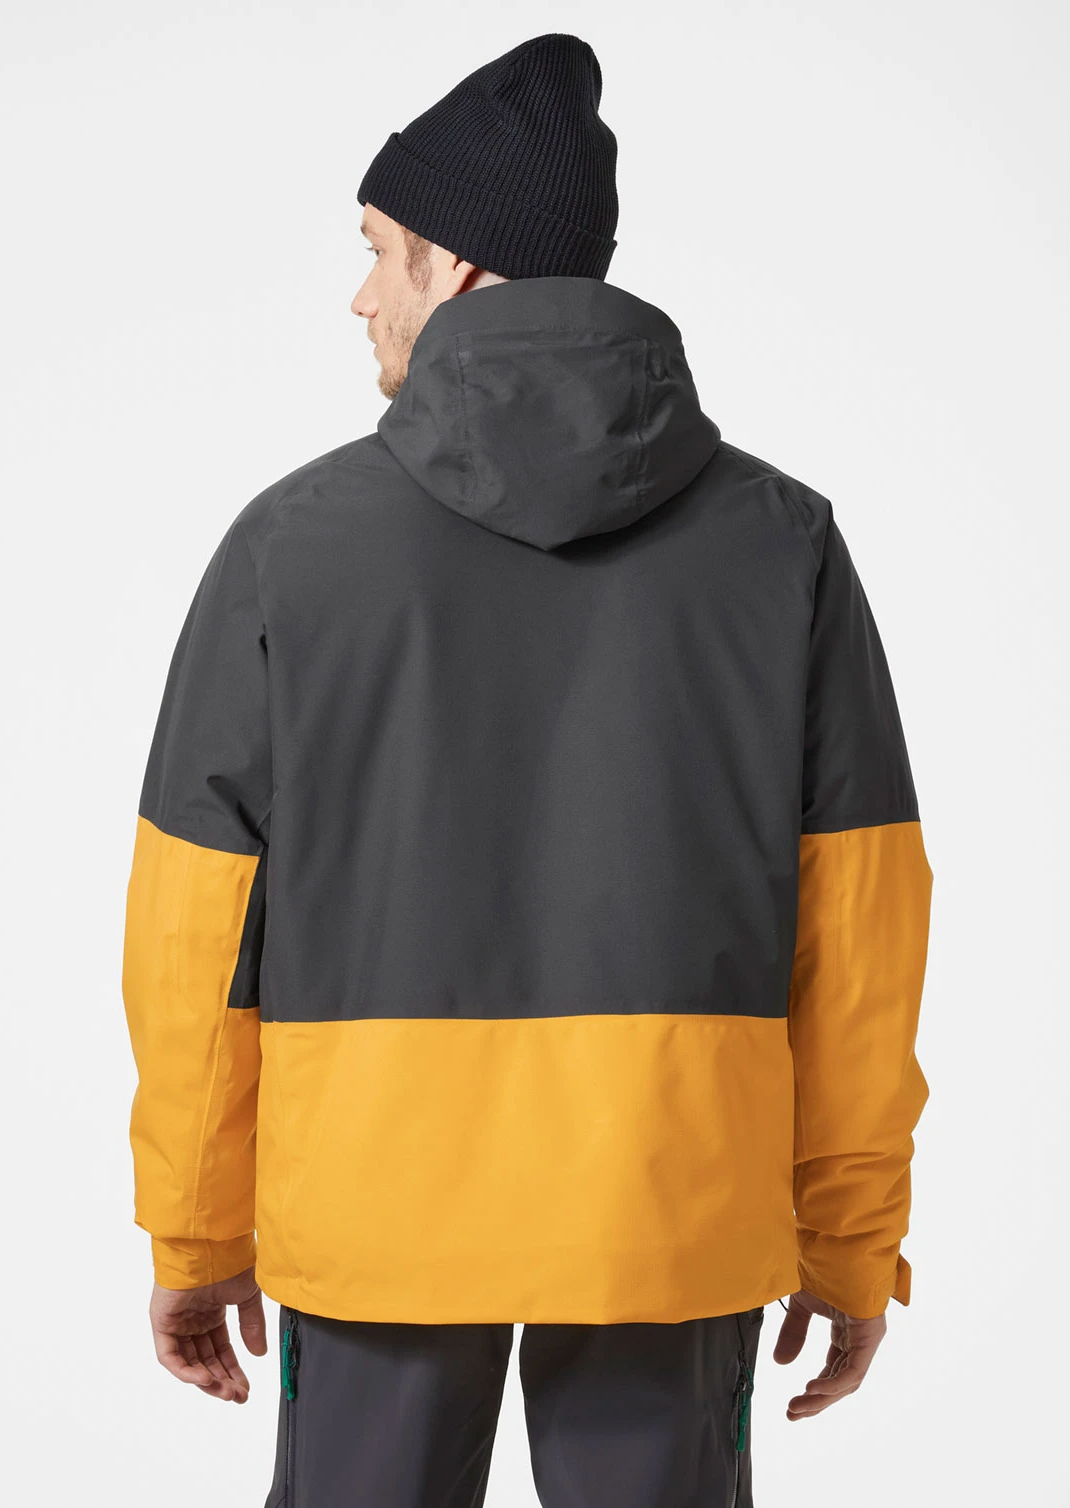 HELLY HANSEN Men’s Banff Insulated Jacket